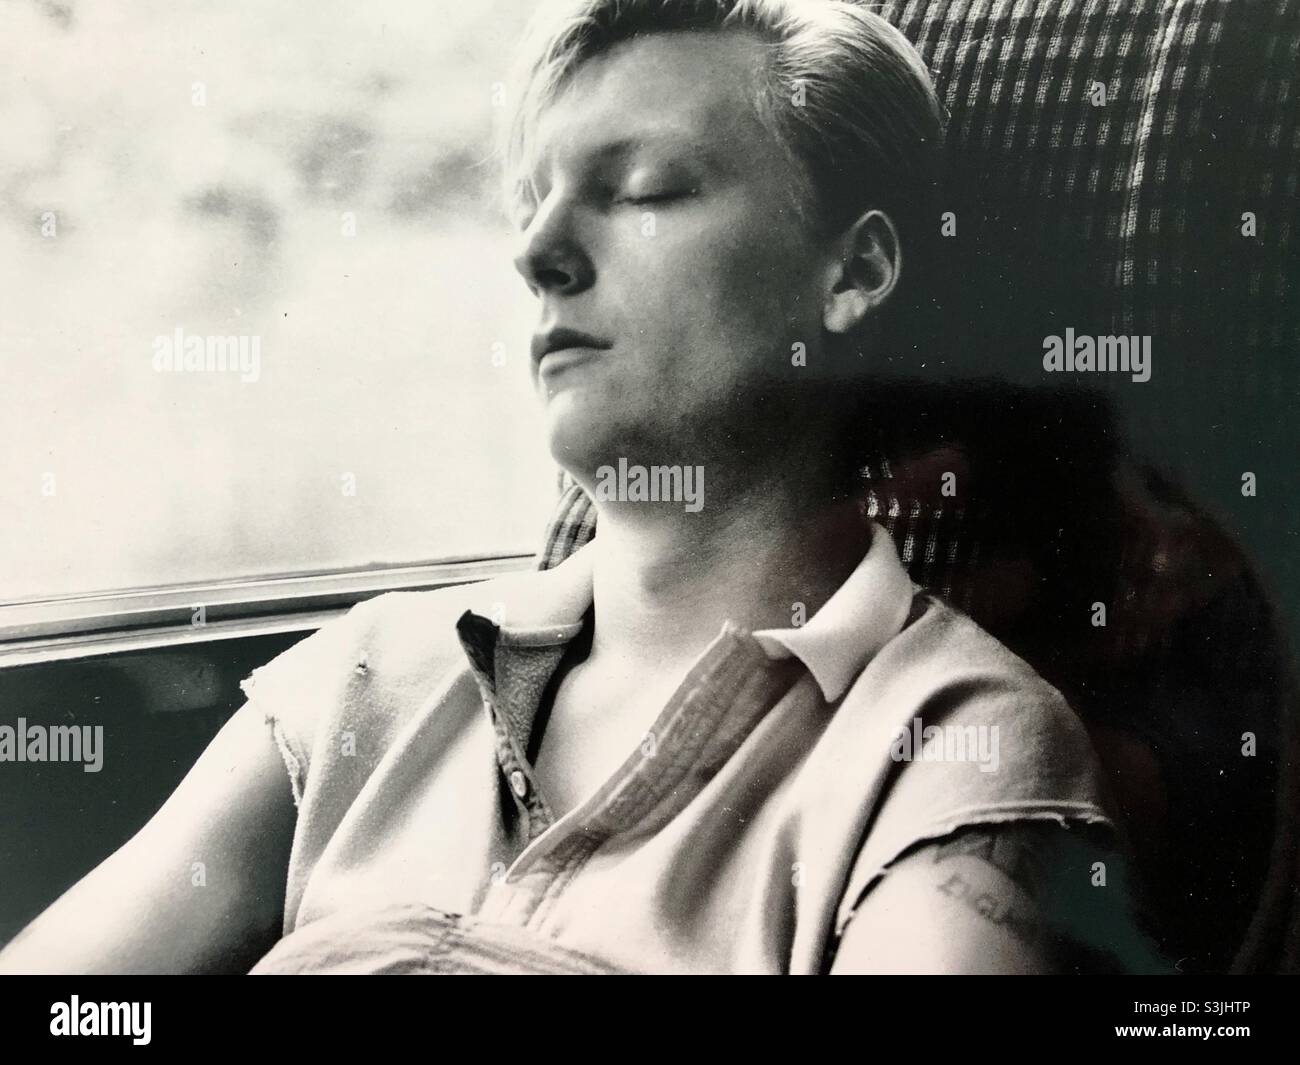 Sleeping man on London train Stock Photo